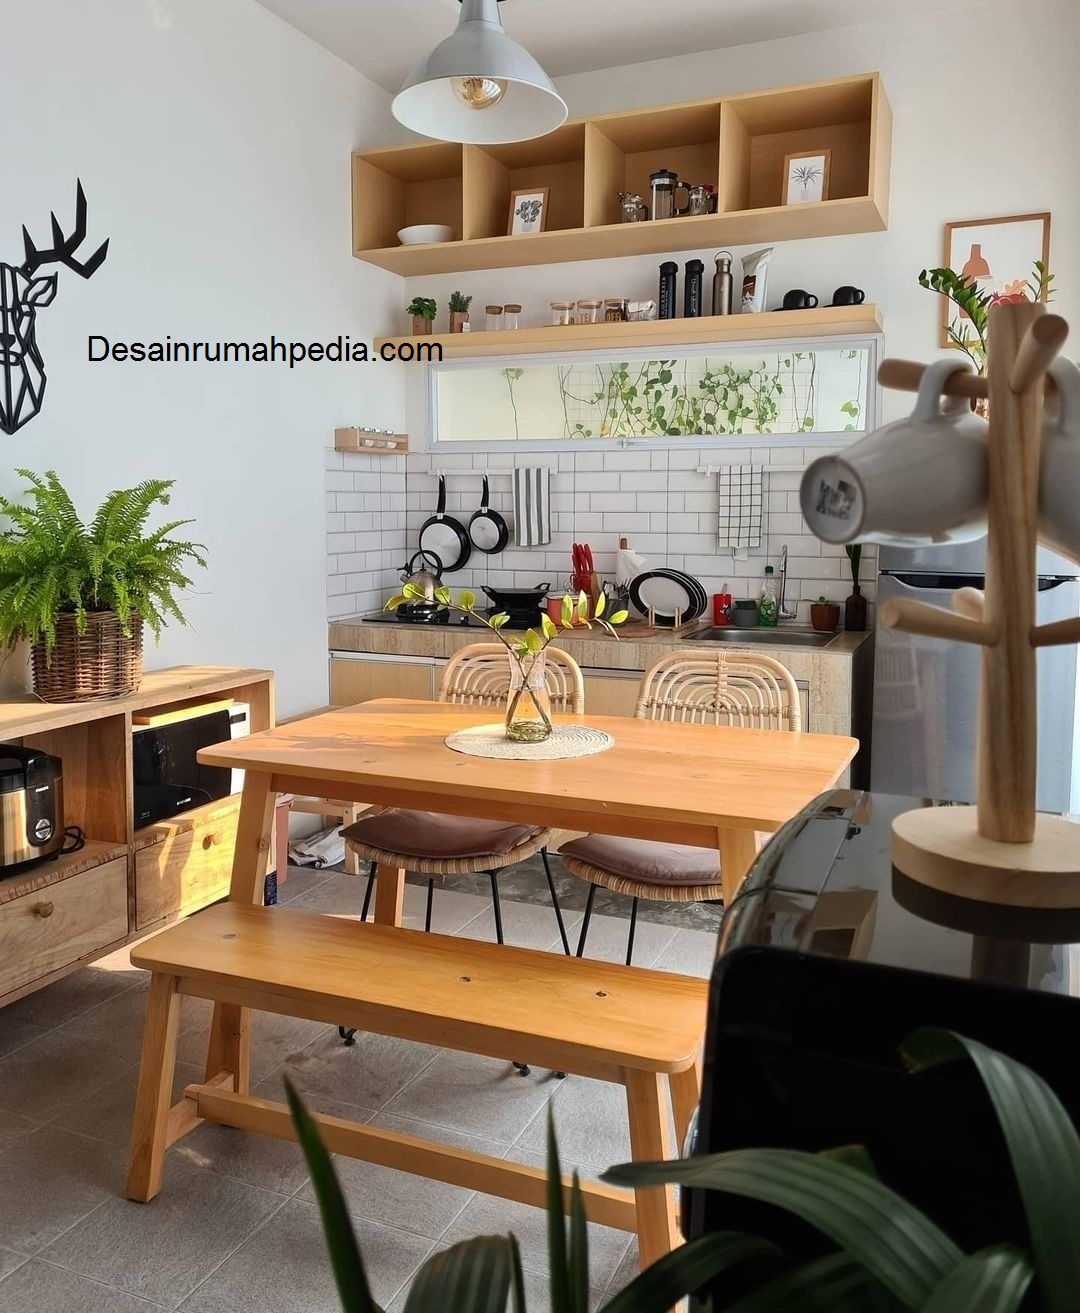 Contoh 6 Desain Dapur Minimalis Yang Bisa Anda Tiru Dengan Kabinet Tambahan Desainrumahpediacom Inspirasi Desain Rumah Minimalis Modern